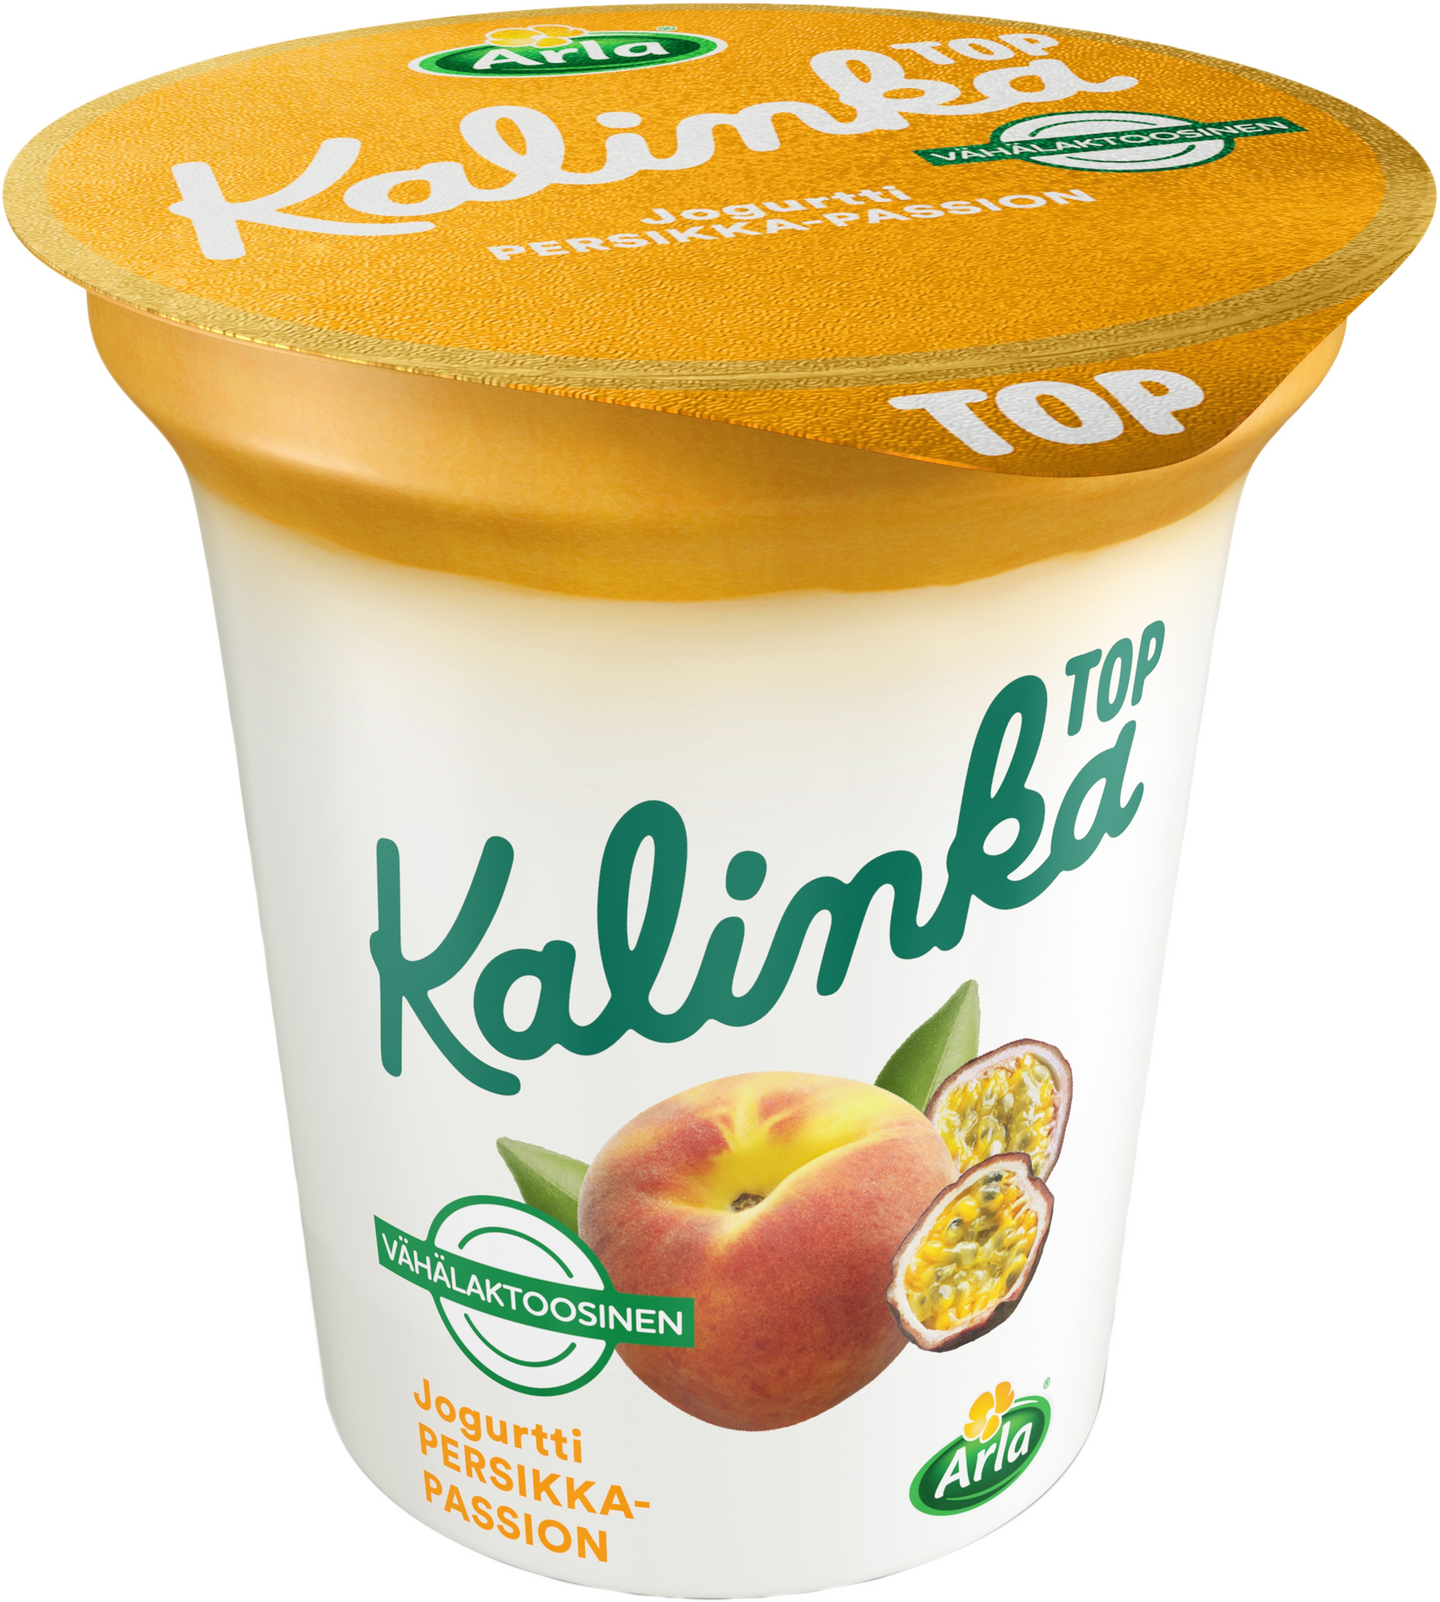 Arla Kalinka top persikka-passionkerrosjogurtti 150g vähälaktoosinen